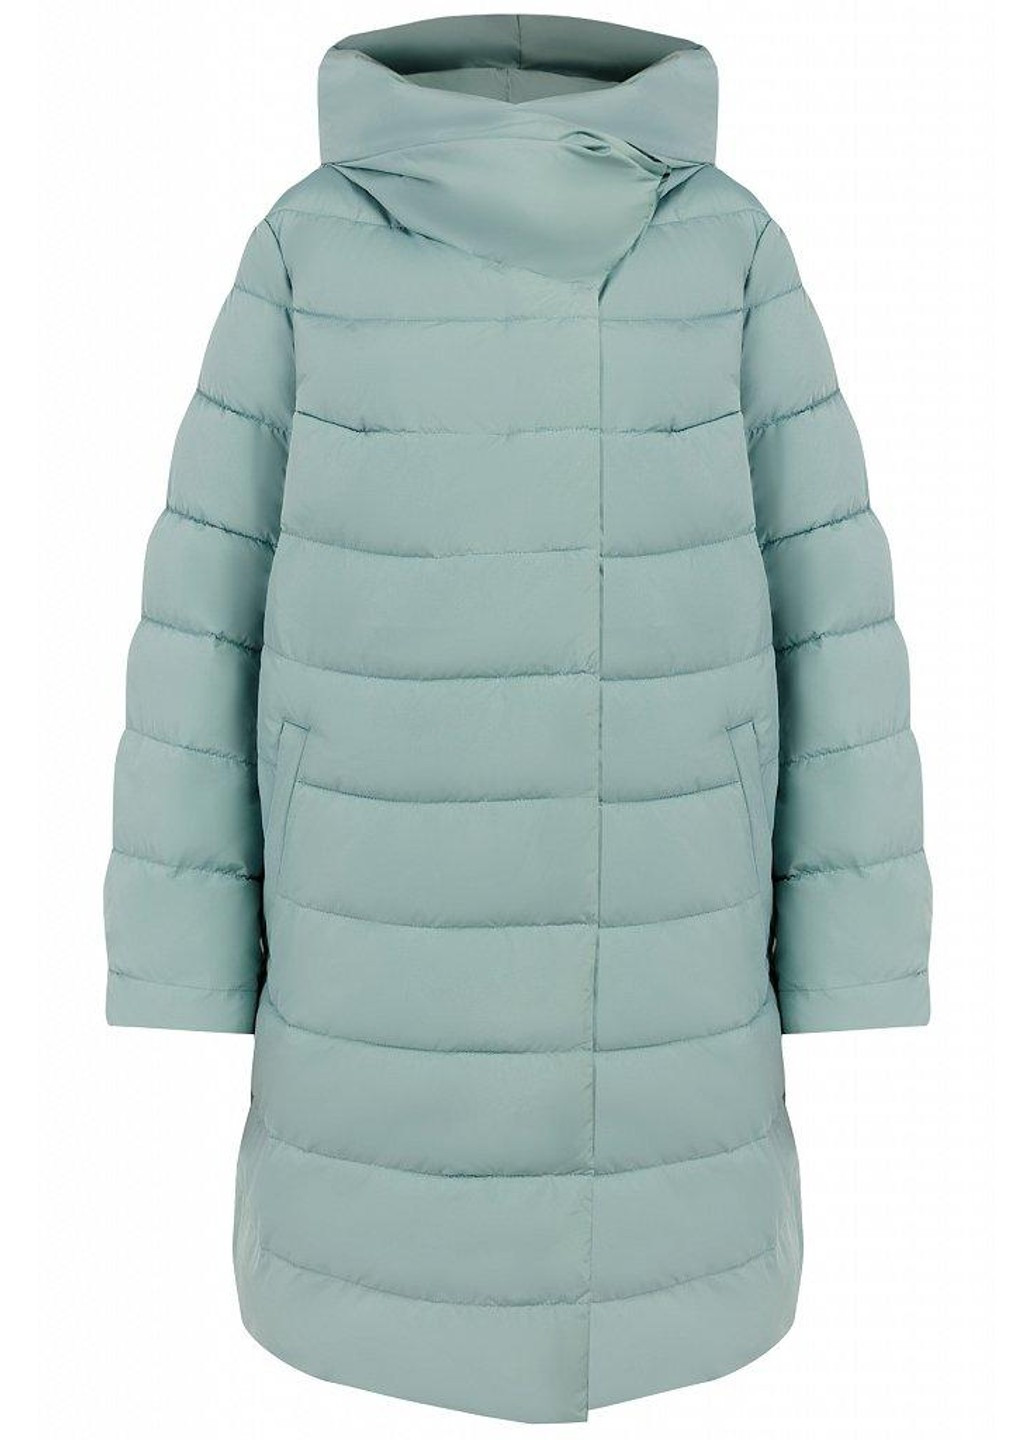 Бирюзовая зимняя зимняя куртка w19-32020-903 Finn Flare